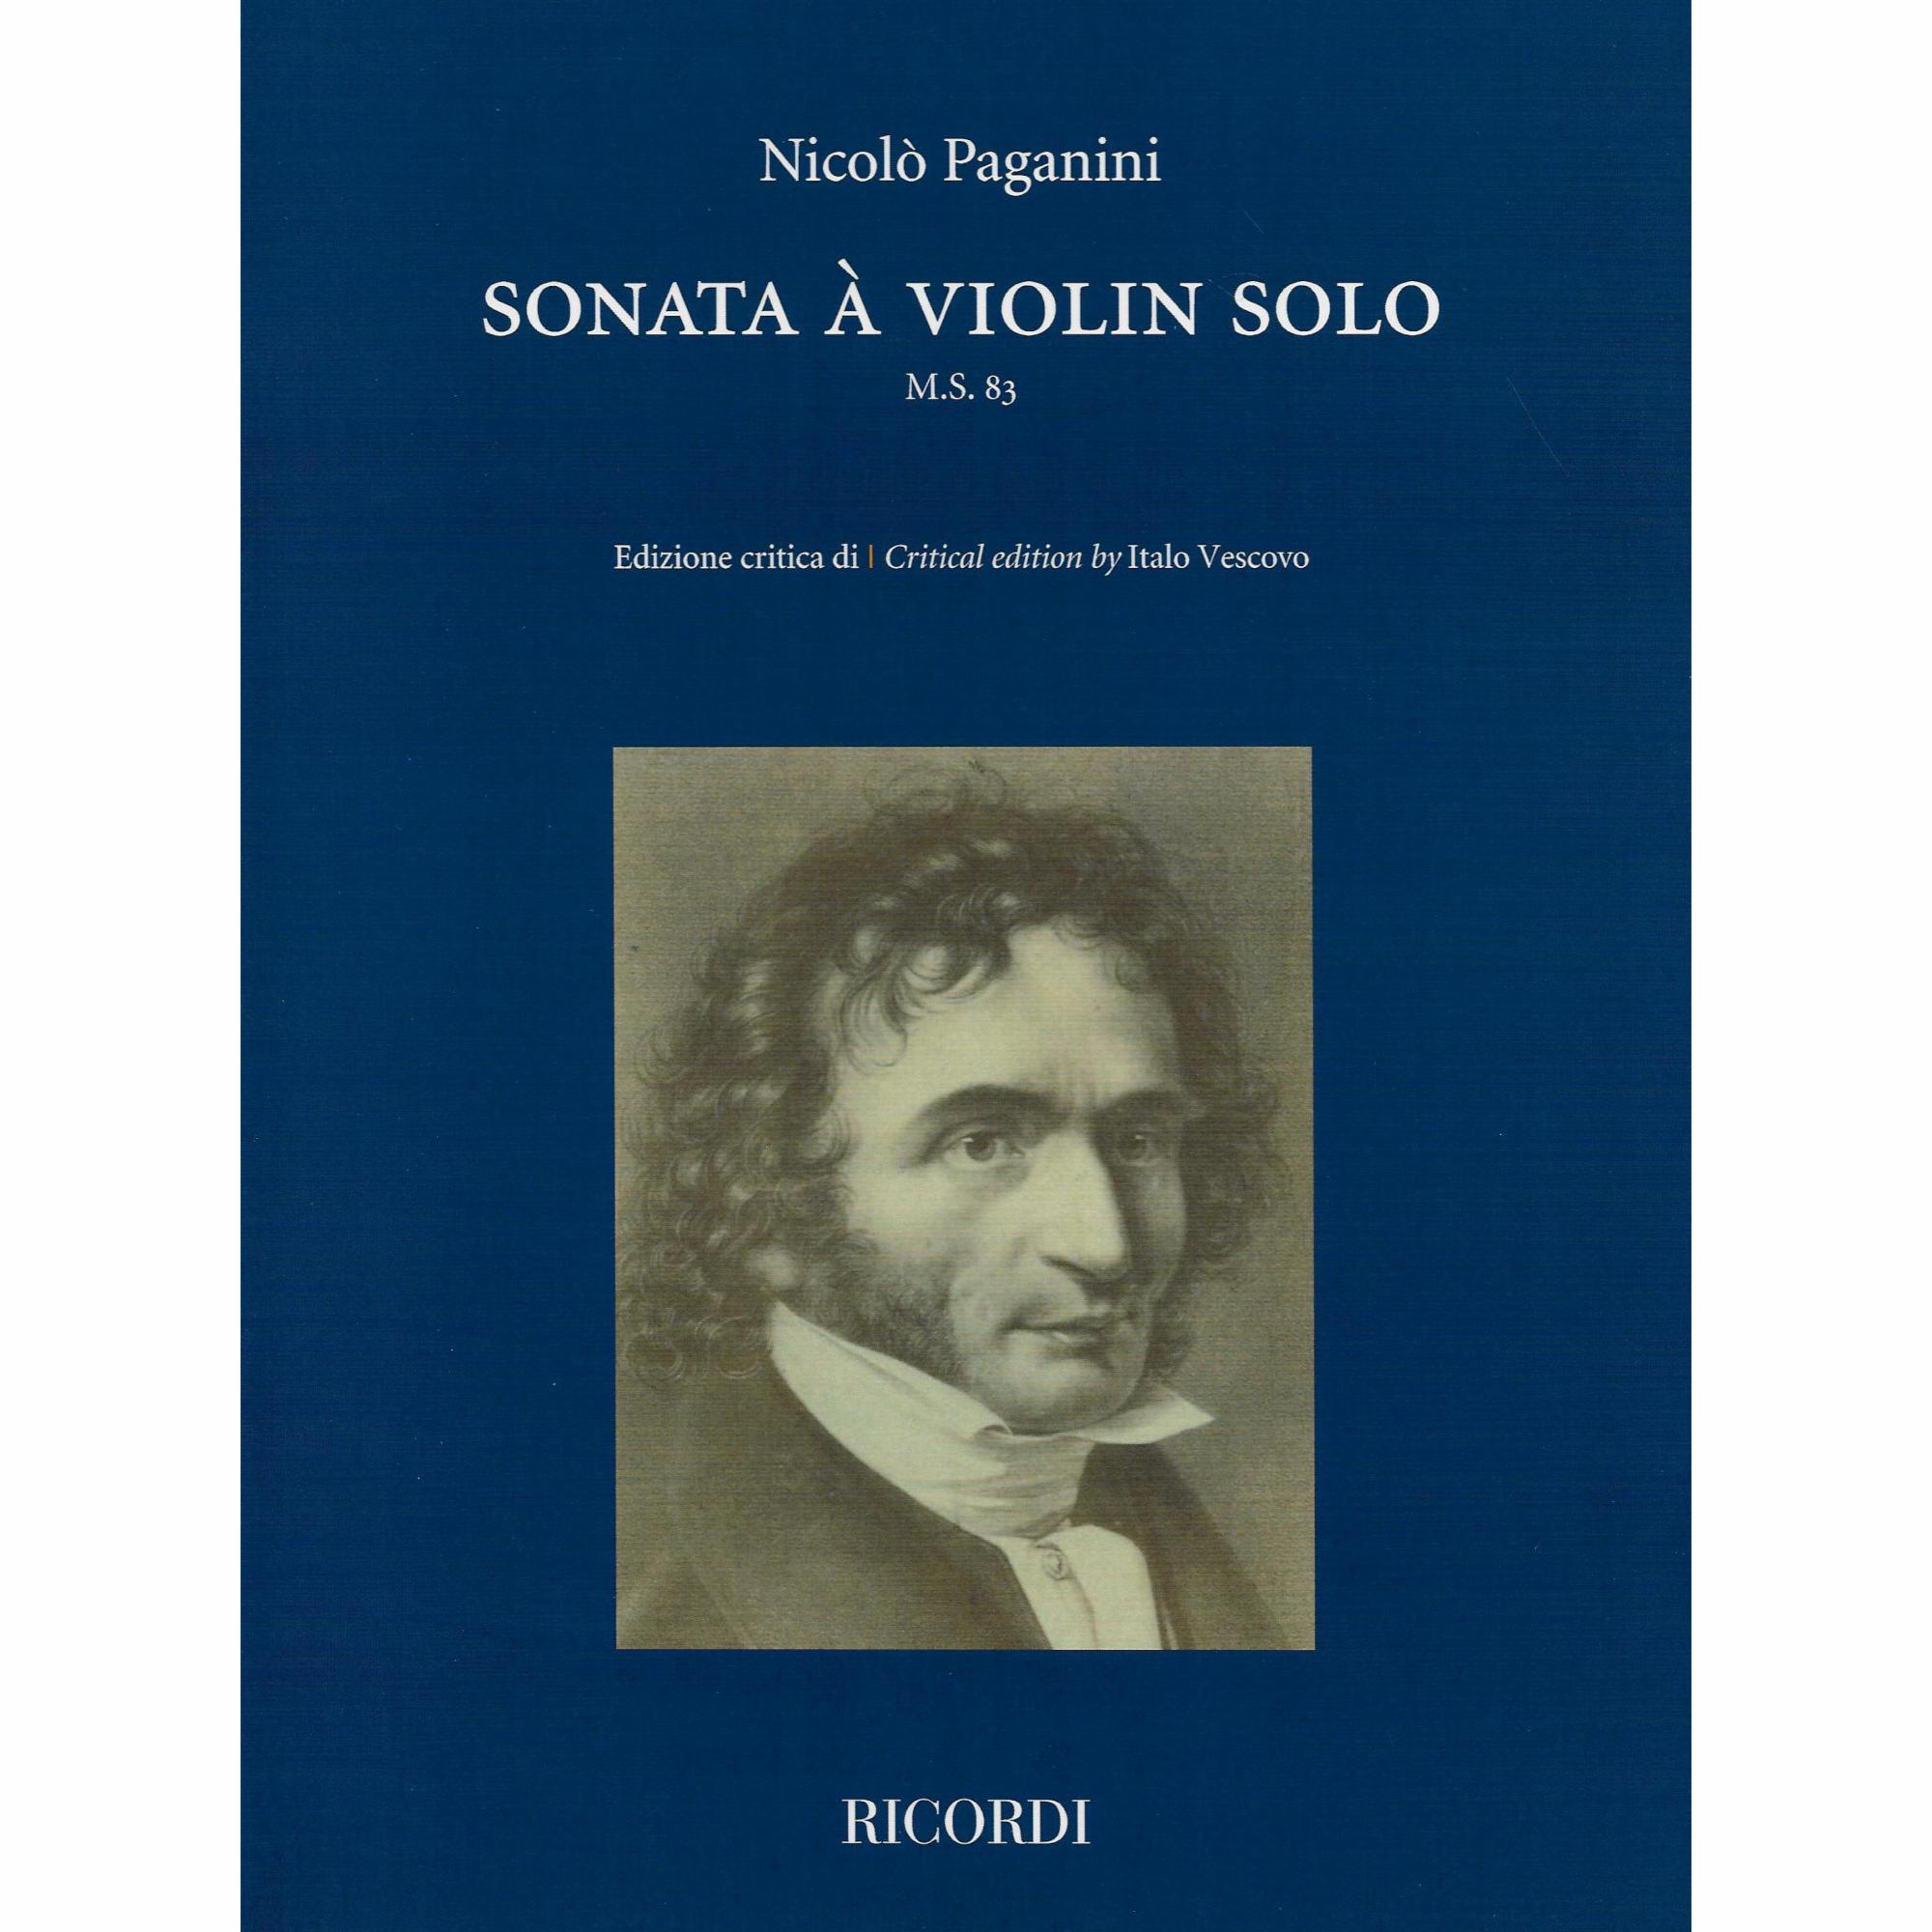 Paganini -- Sonata a Violin Solo, M.S. 83